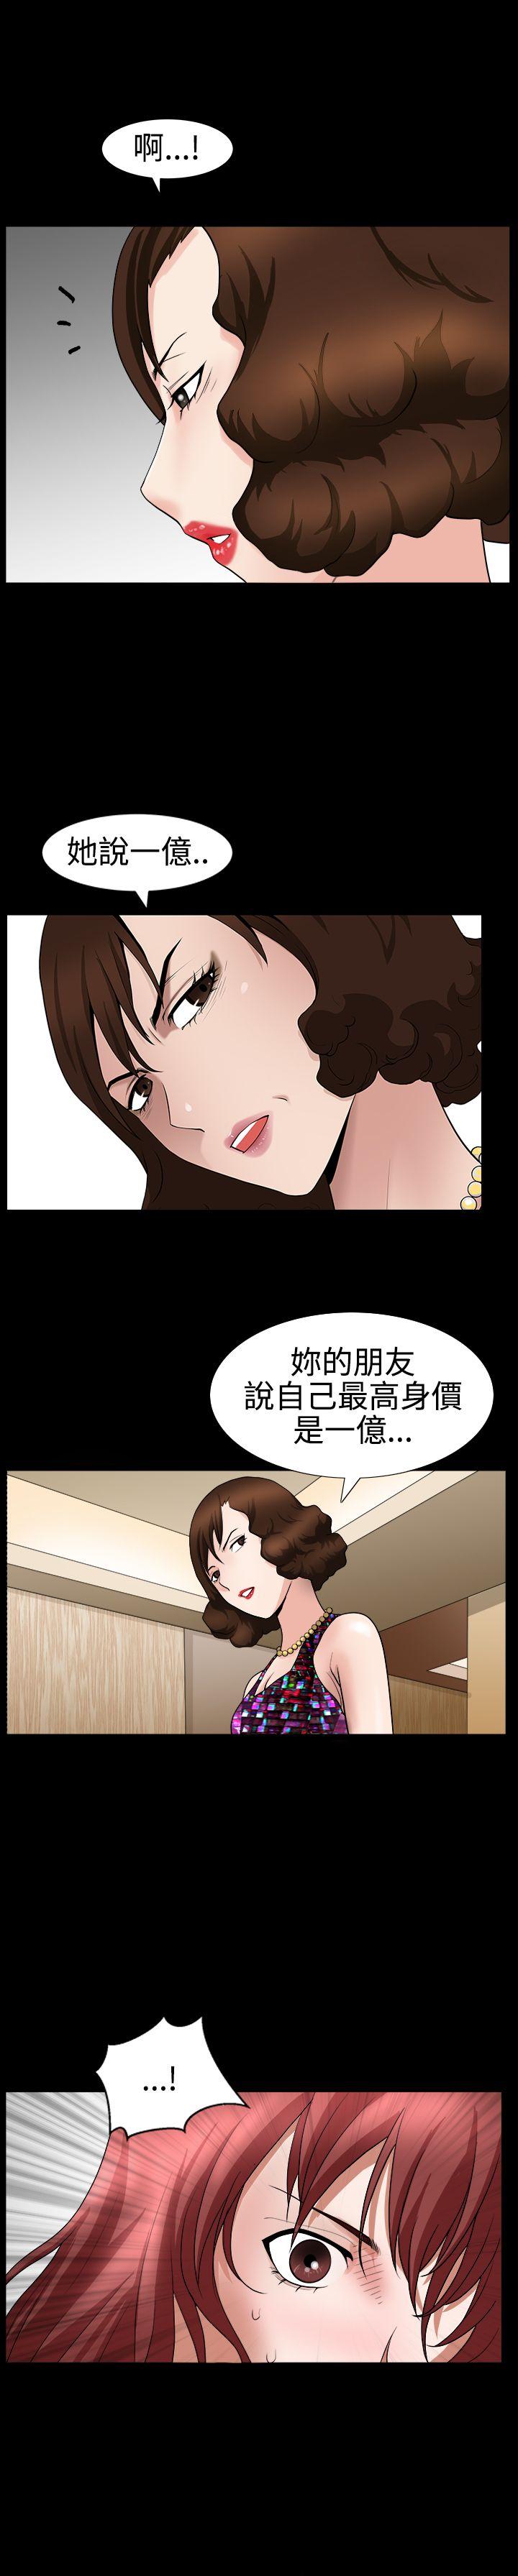 韩国污漫画 人妻性解放3:粗糙的手 第23话 21